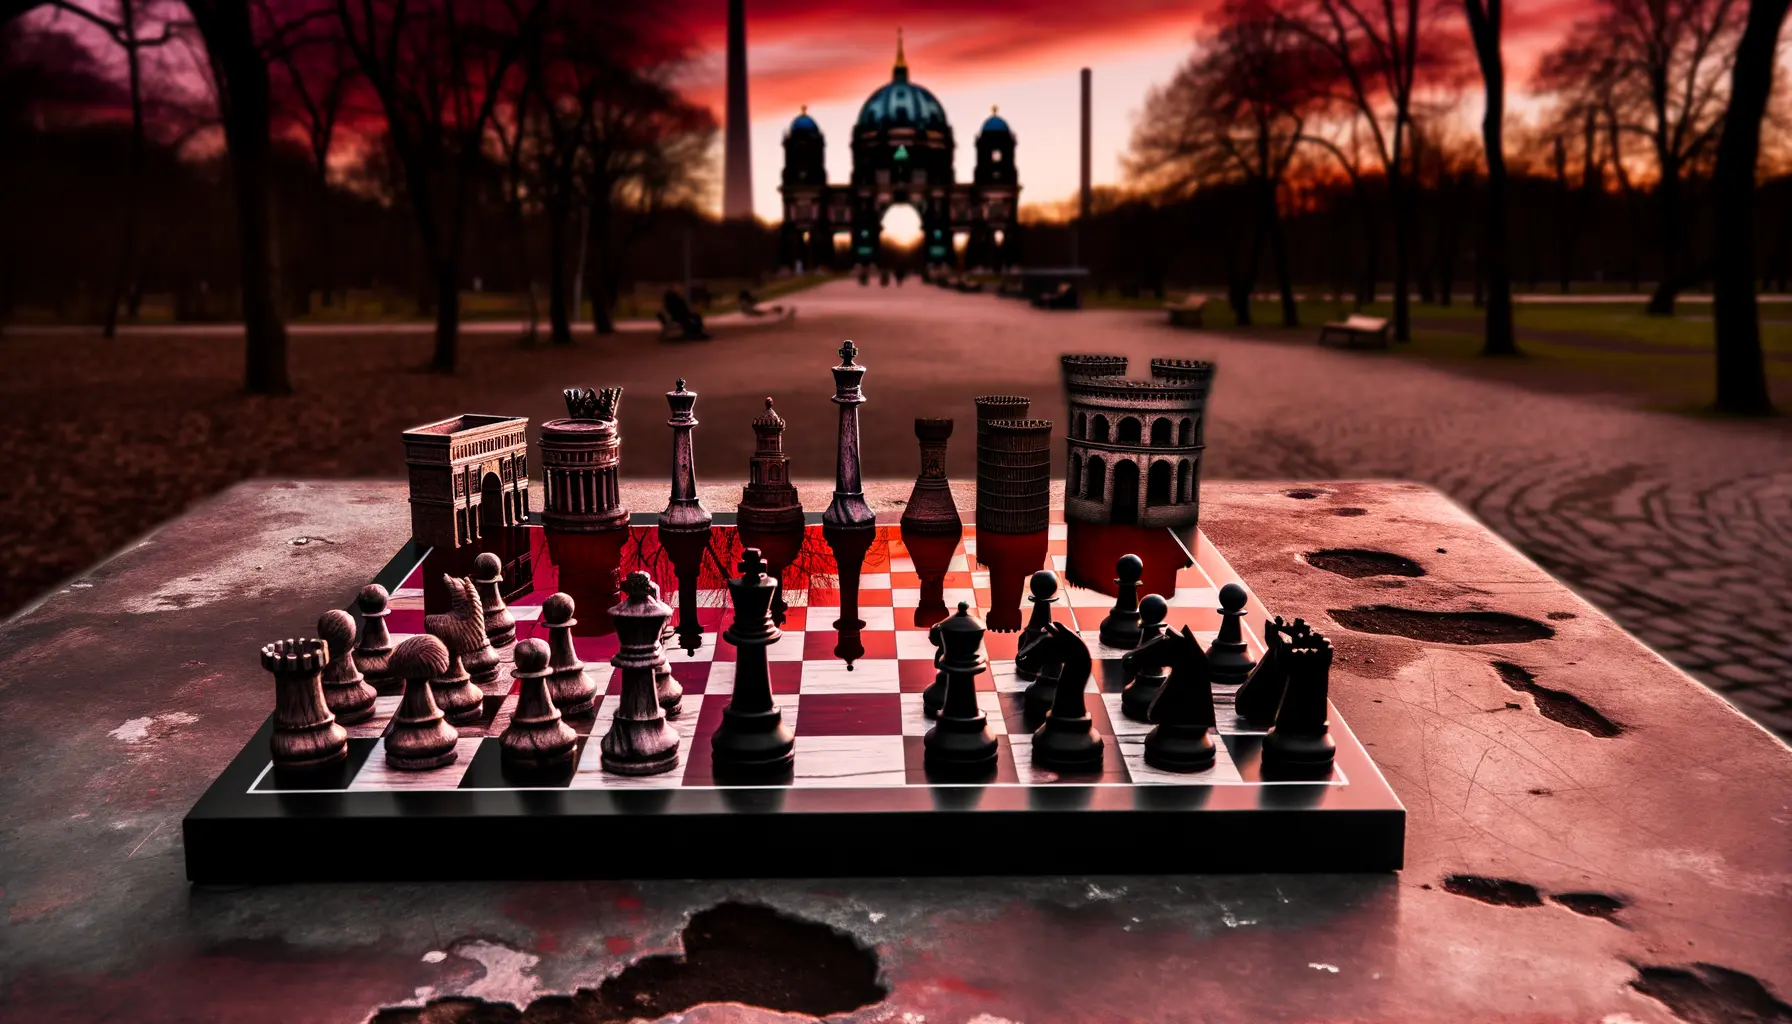 Berliner Schachspiel